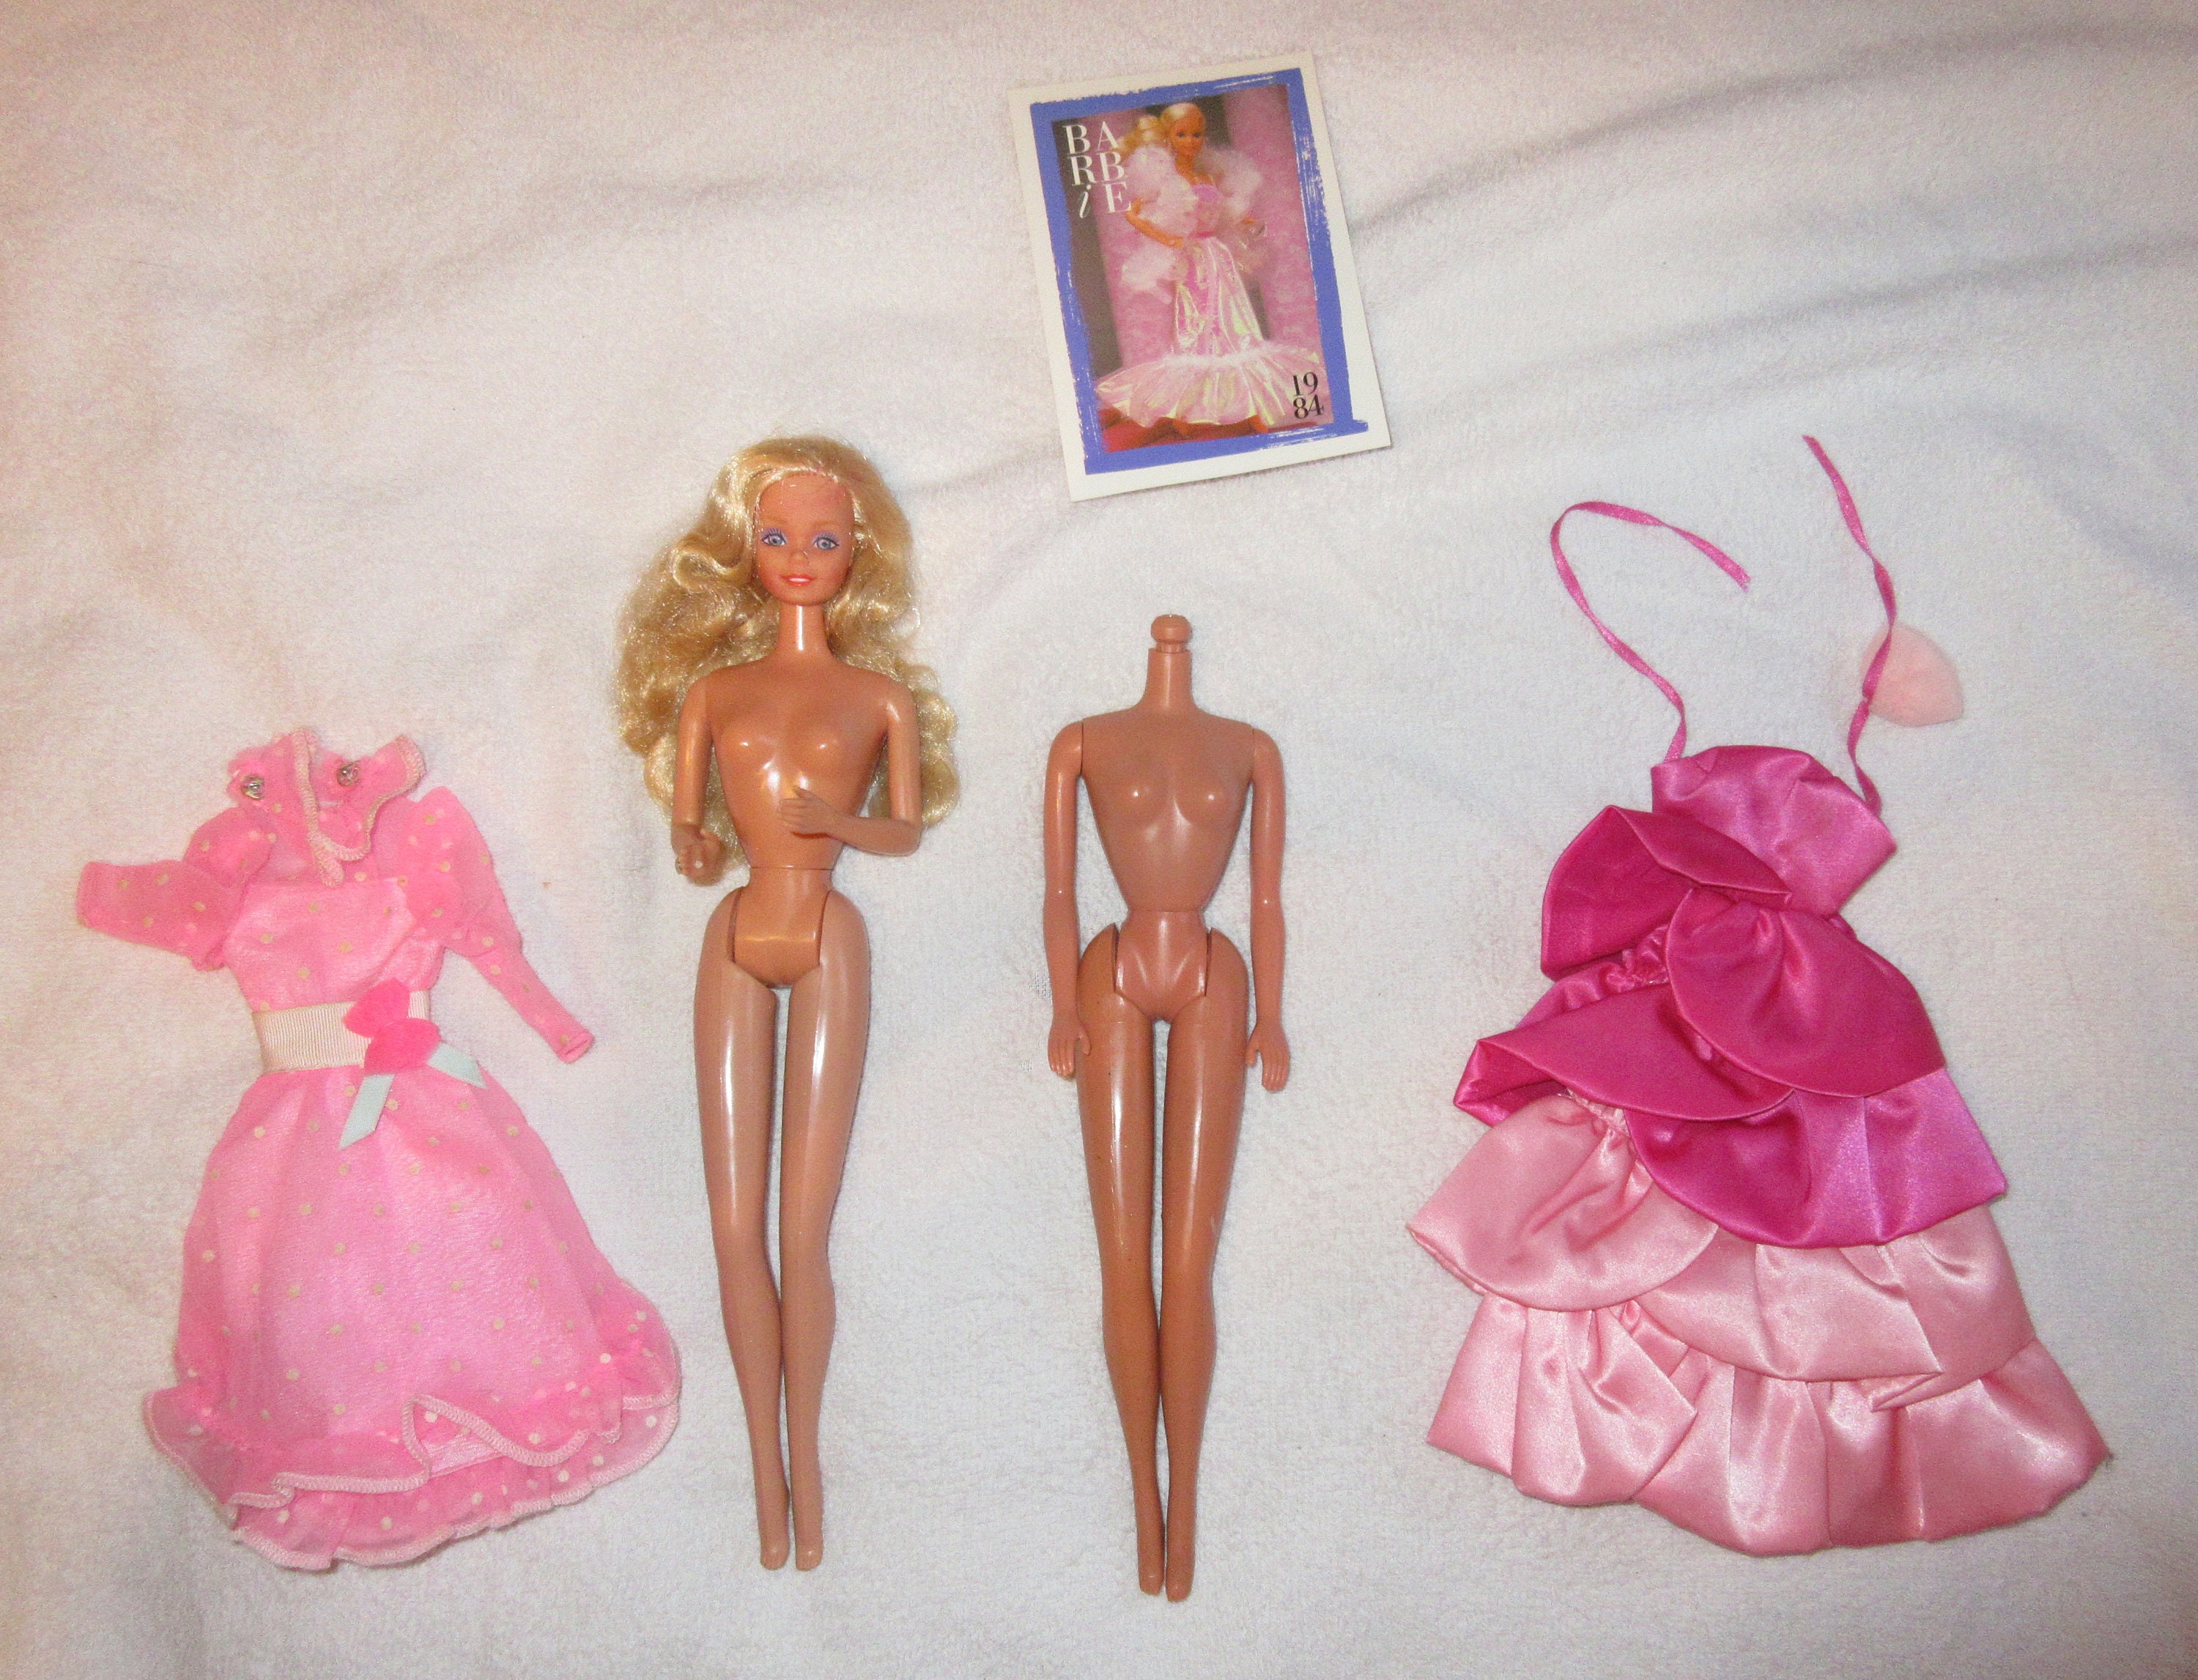 ik heb honger Arbeid toezicht houden op 1984 Crystal Barbie Plus Extra Clothes - Etsy